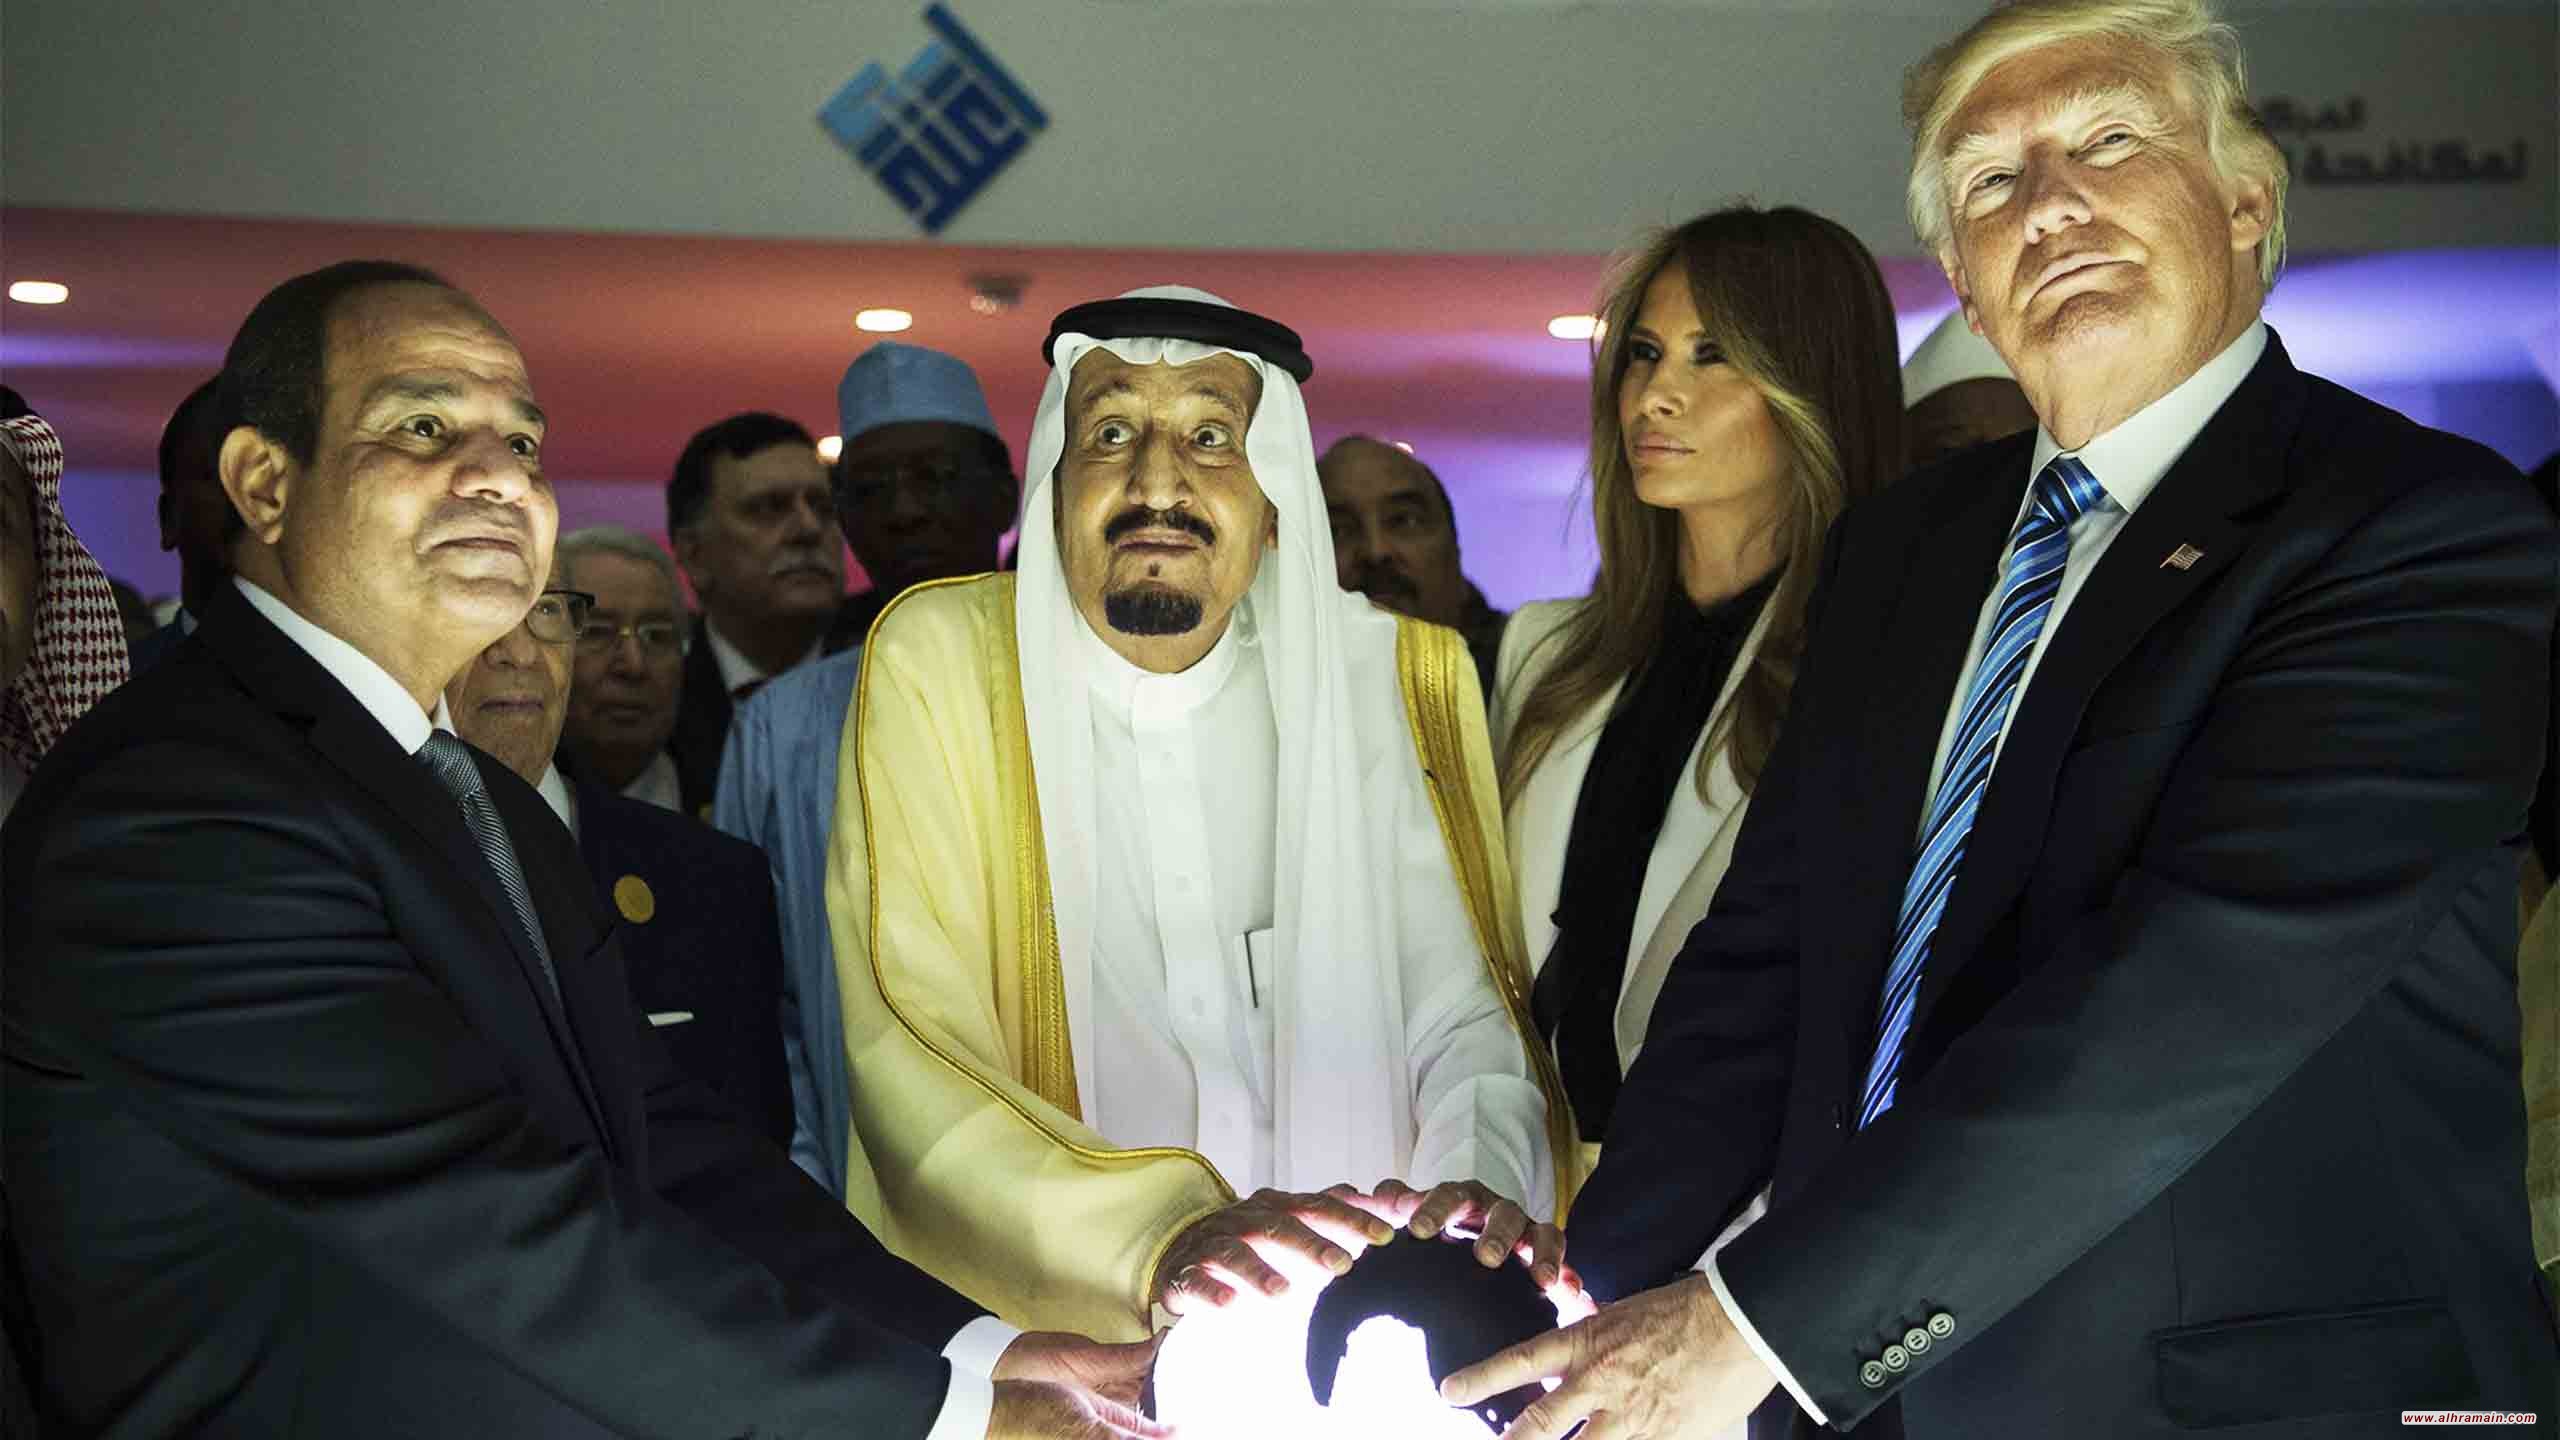 «ترامب» يسعى خفية لتشكيل «ناتو عربي» ضد إيران